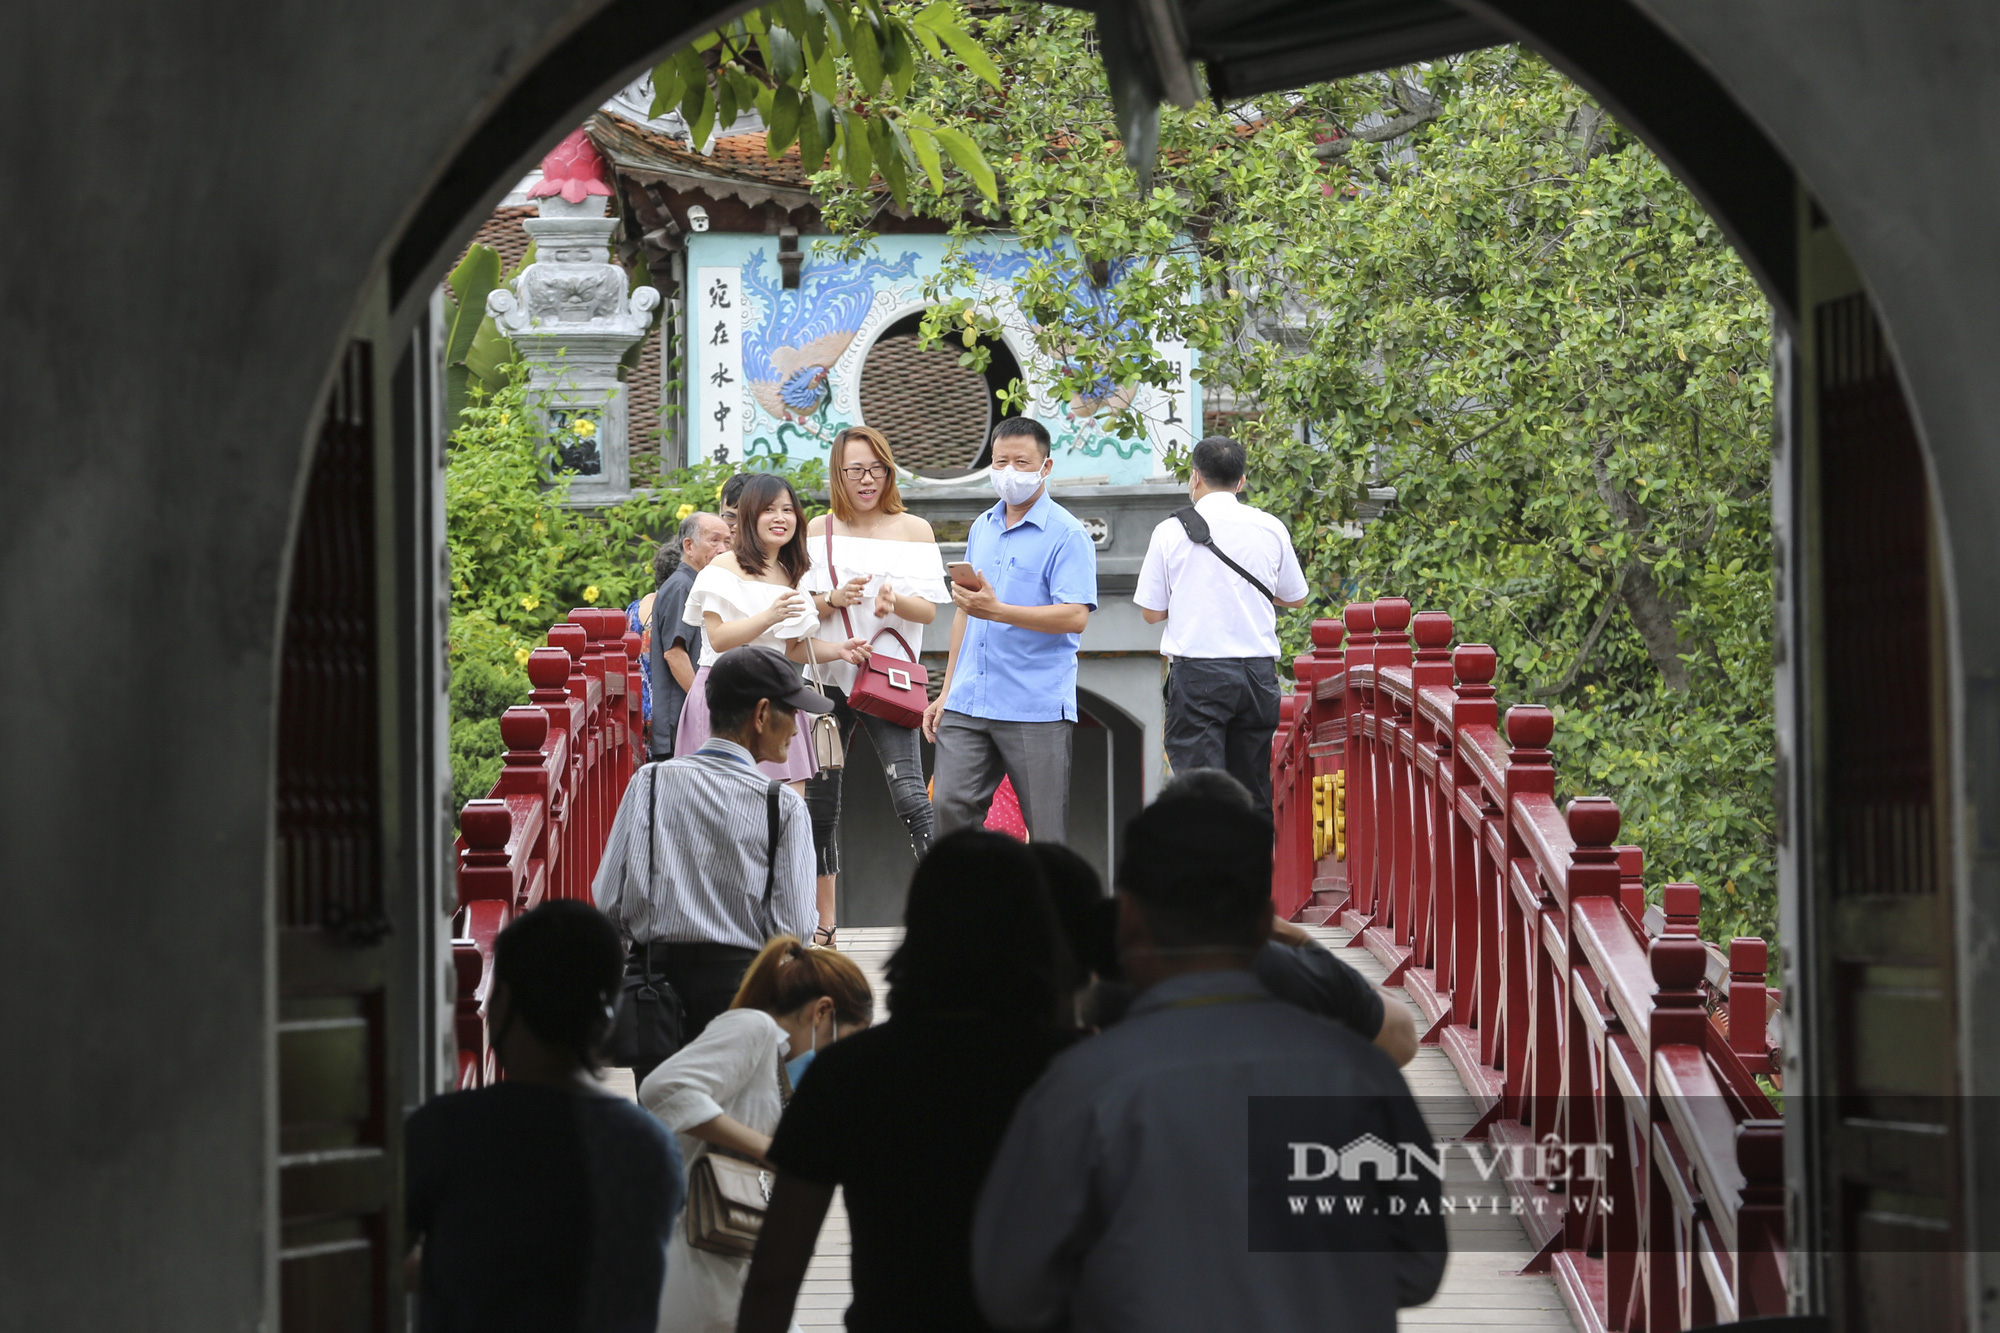 Hà Nội: Nhiều người dân vẫn không đeo khẩu trang tại nơi công cộng - Ảnh 7.